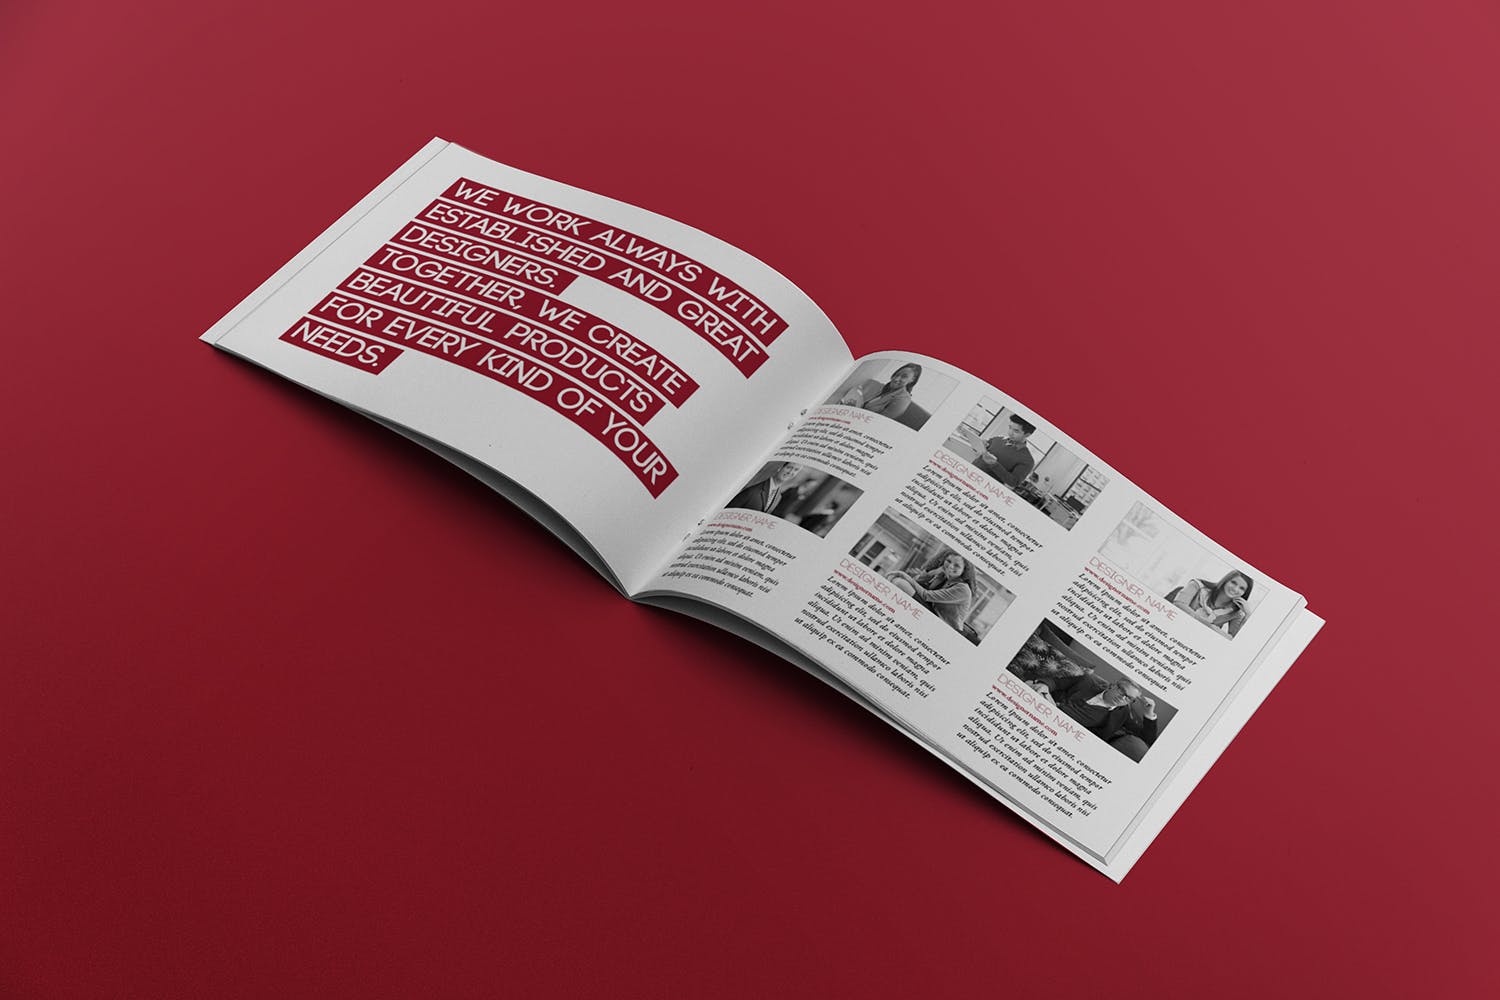 宣传画册/企业画册内页版式设计图样机16图库精选 Open Landscape Brochure Mockup插图(2)